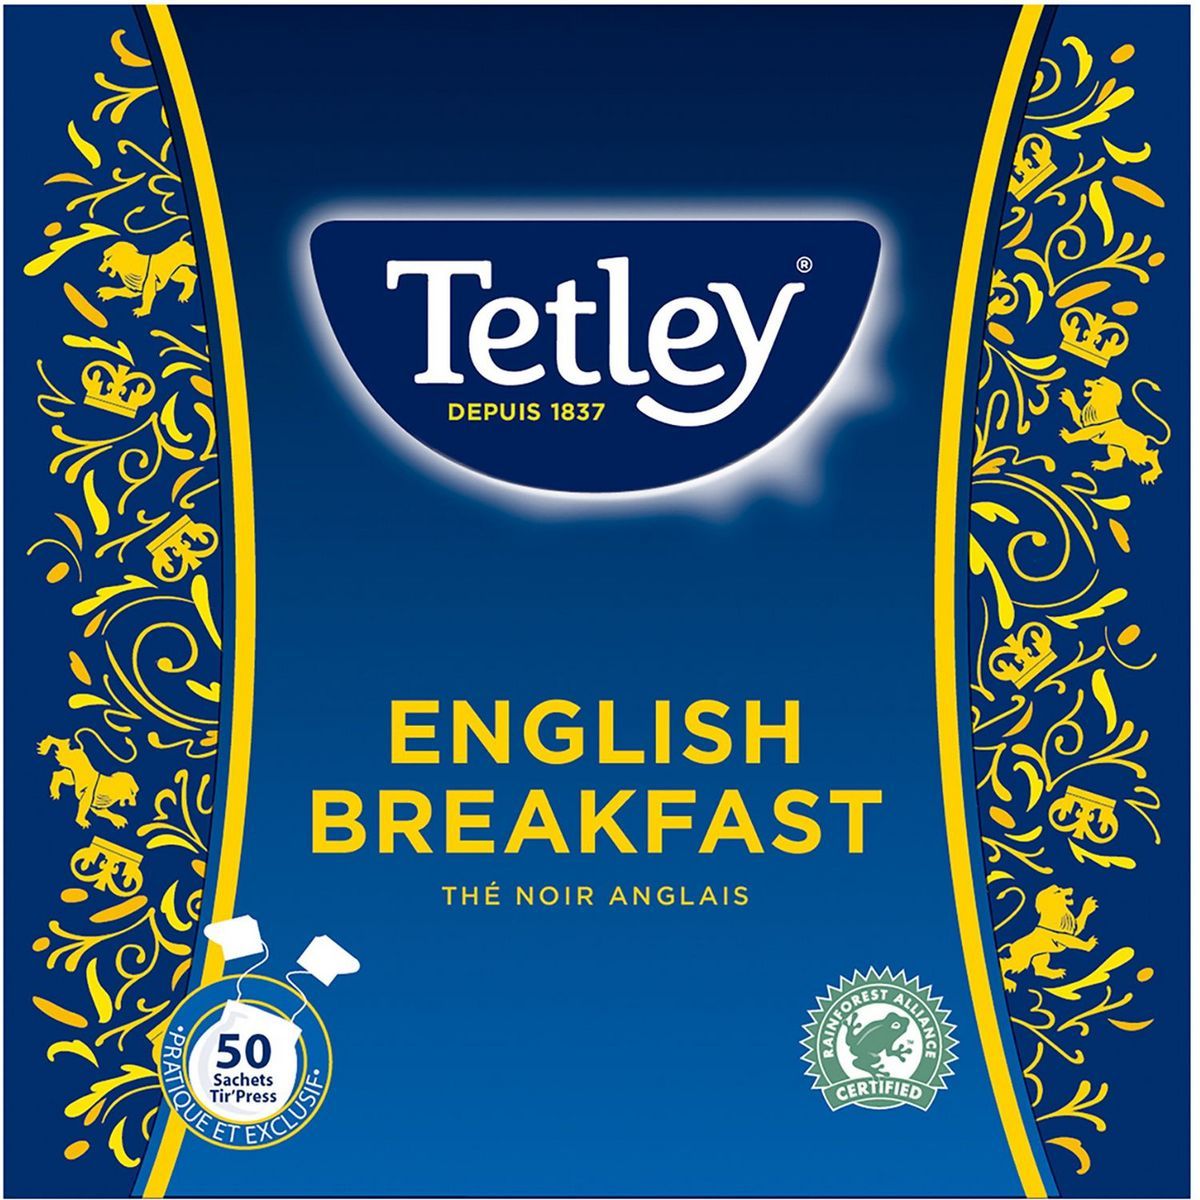 THE TETLEY ENGLISH  BREAKFAST